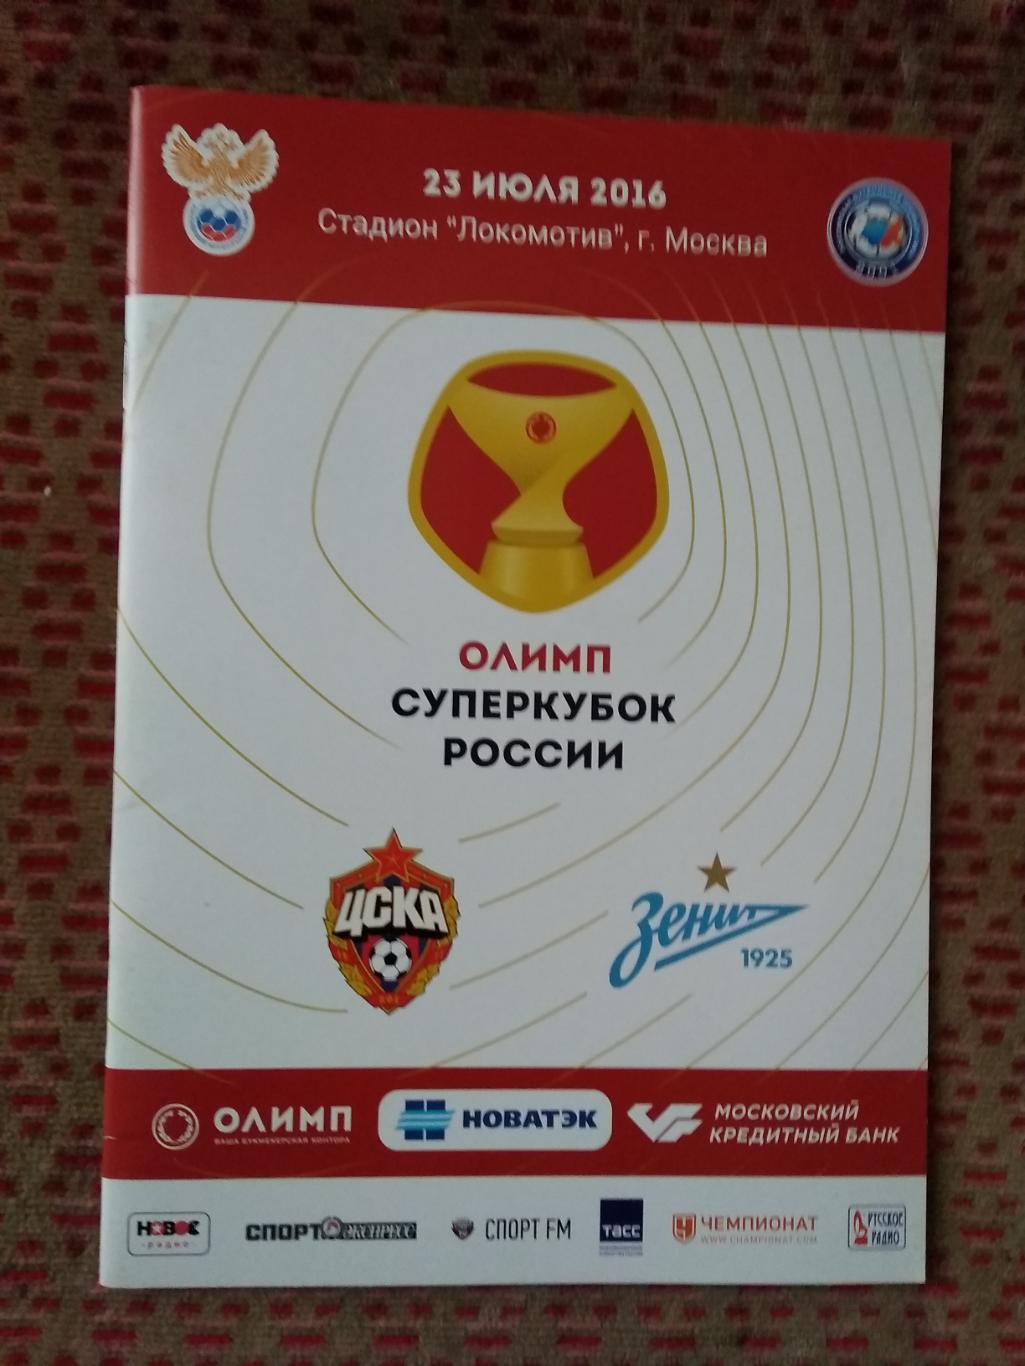 ЦСКА (Москва) - Зенит (Санкт-Петербург).Суперкубок России 2016 г.